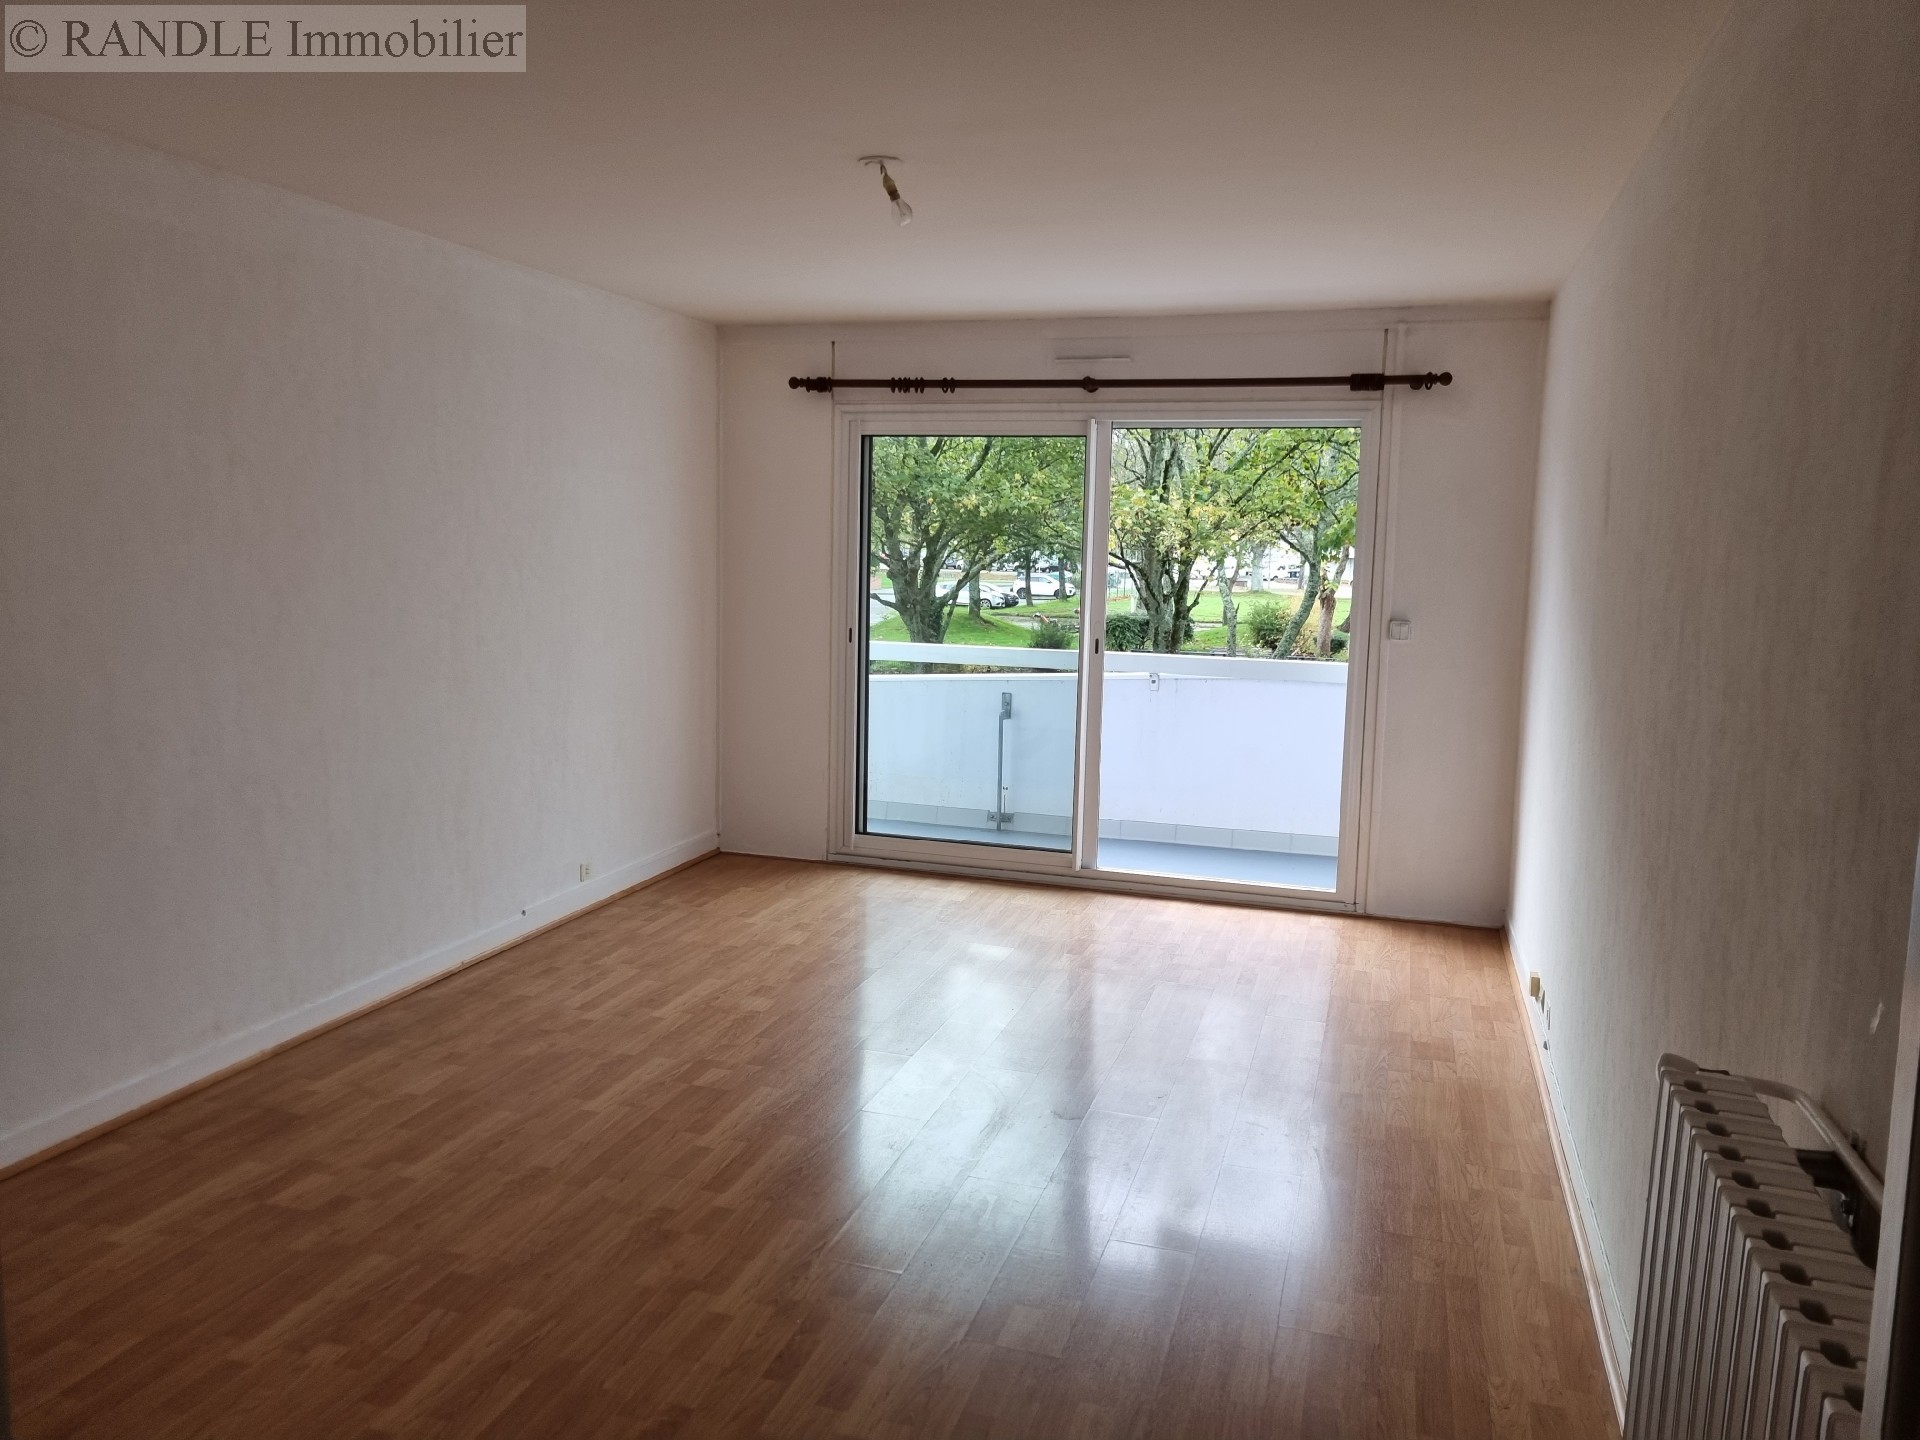 Vente appartement - LORIENT 76 m², 3 pièces